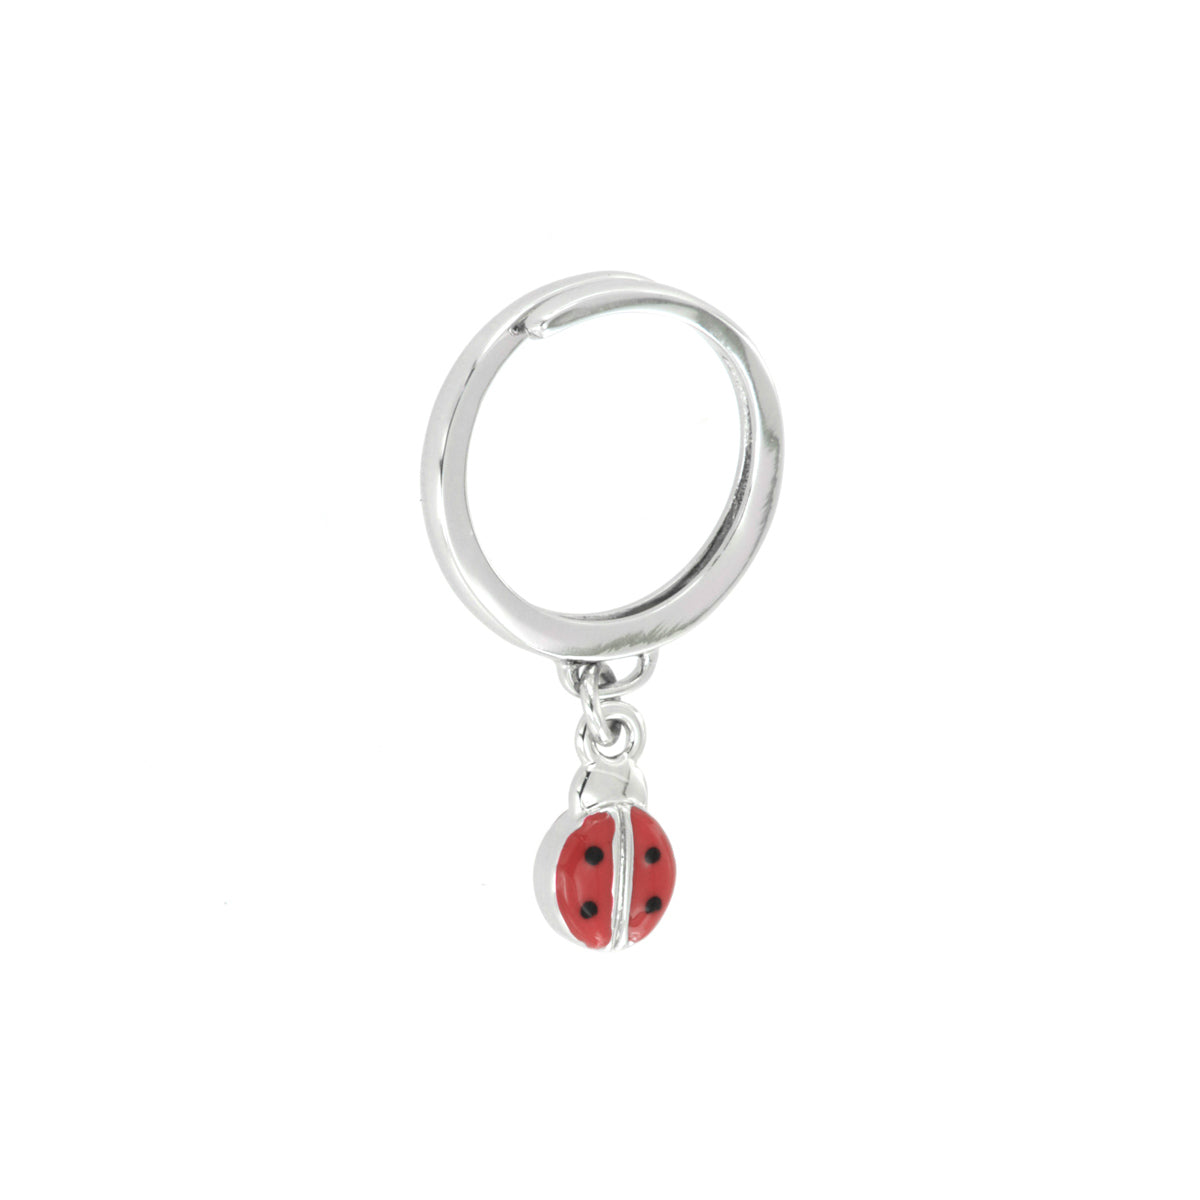 Metal ring with red enamel ladybug